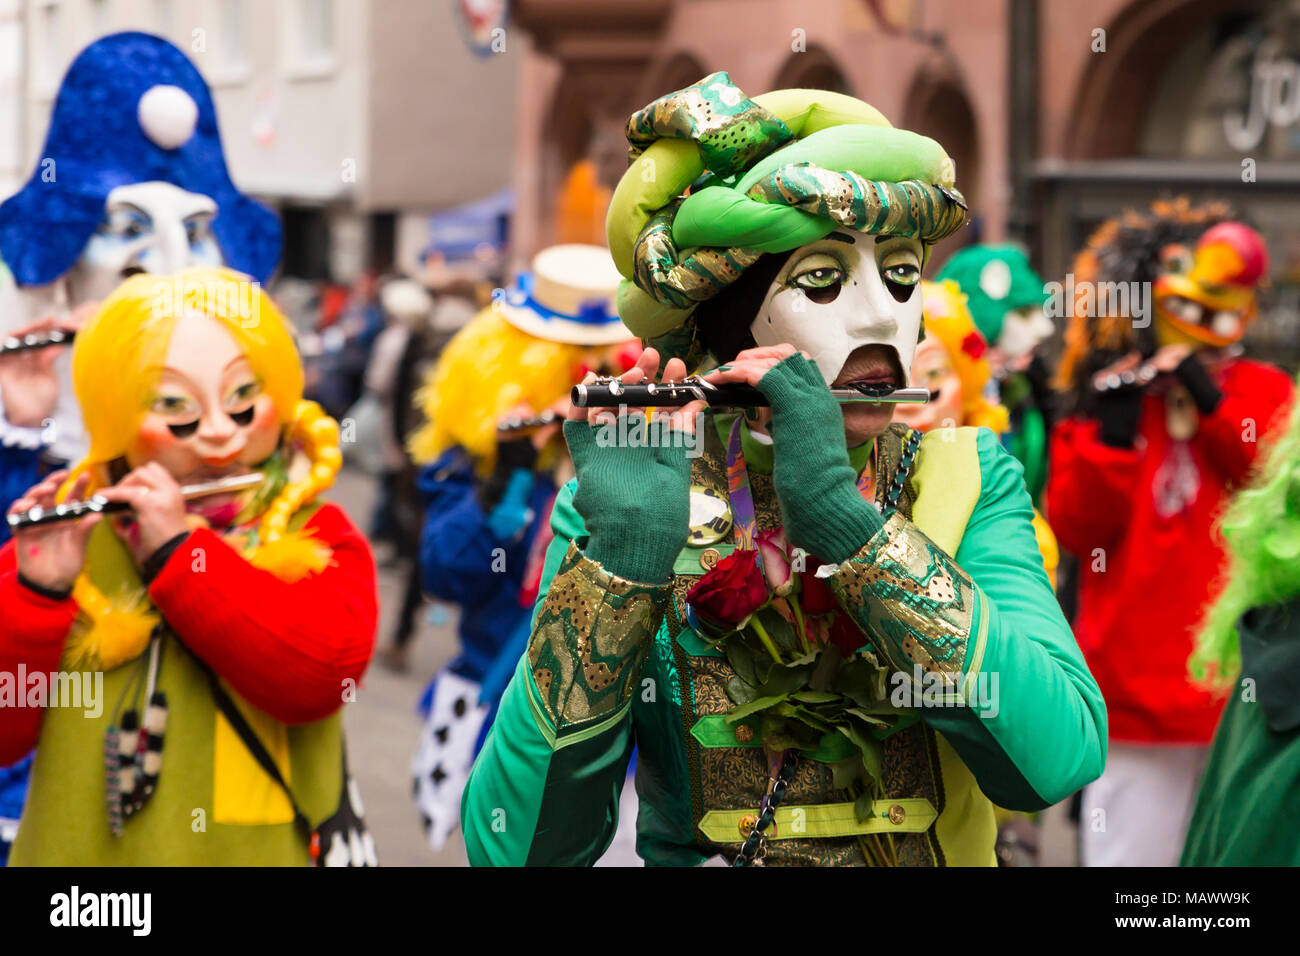 Carnaval de Bâle. Schnabelgasse, Bâle, Suisse - 21 février 2018. Close-up d'une flûte jouer reveler avec un beau costume et masque Banque D'Images